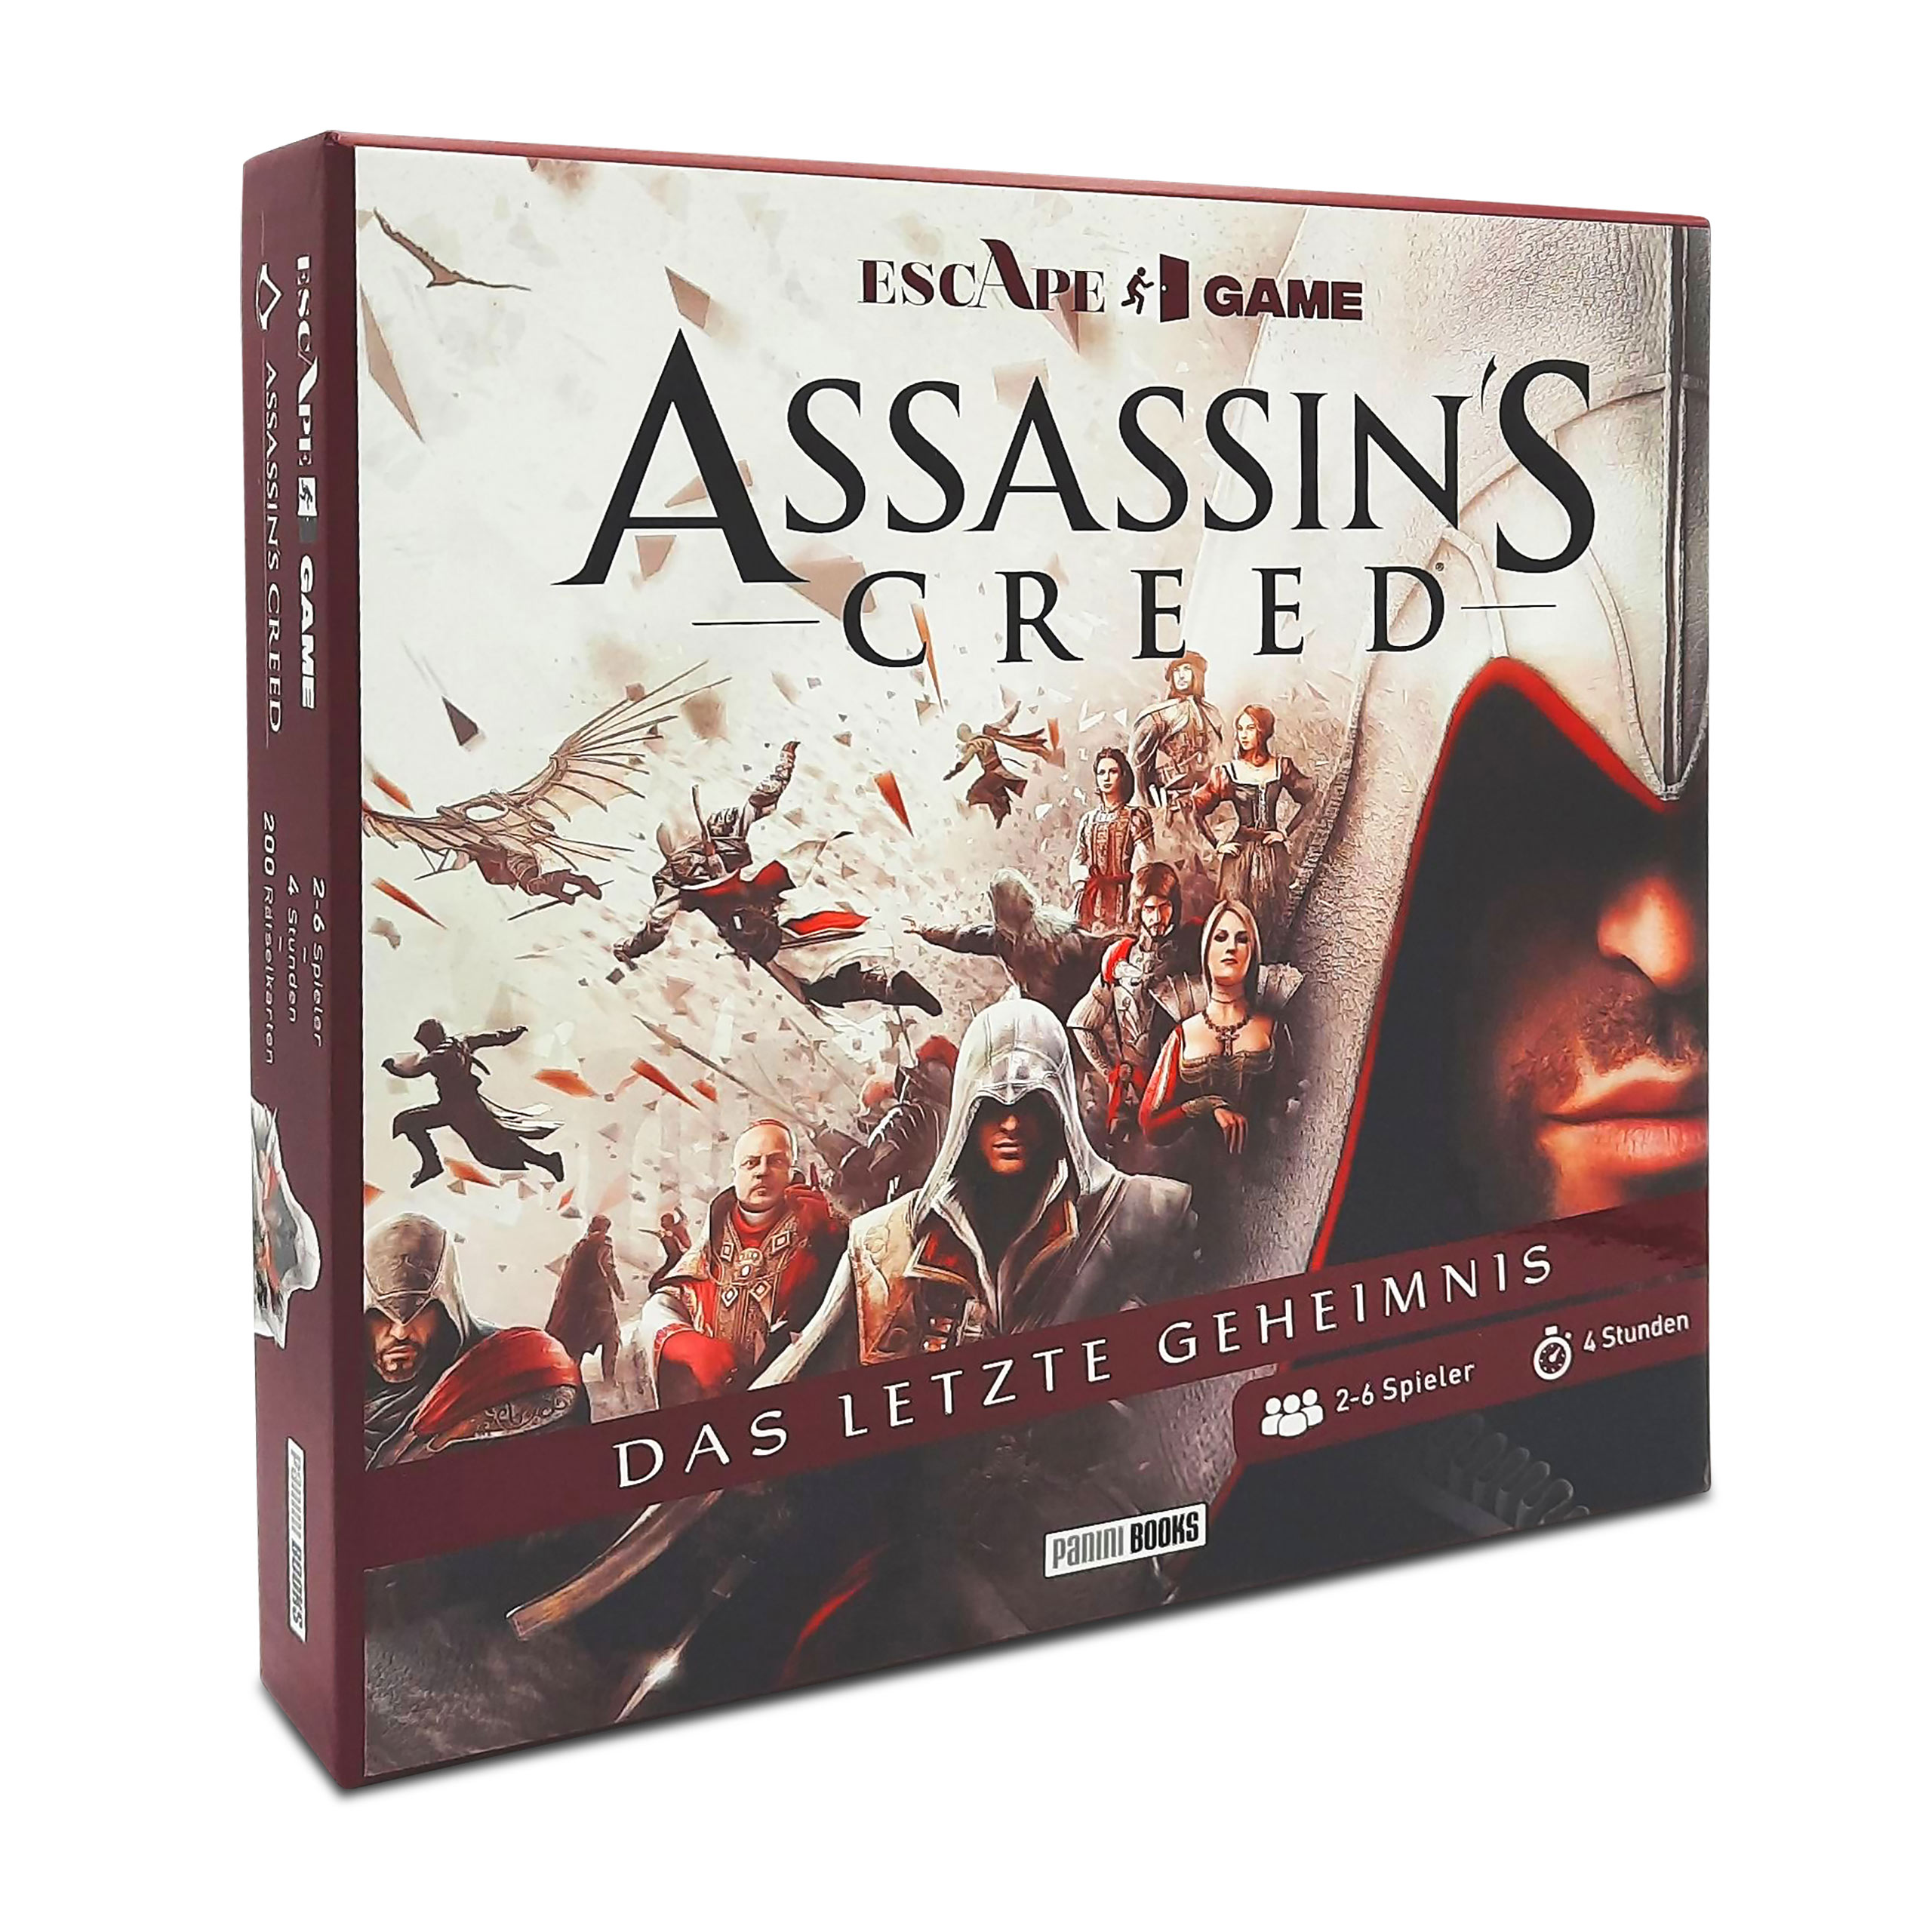 Assassin's Creed - Escape Game